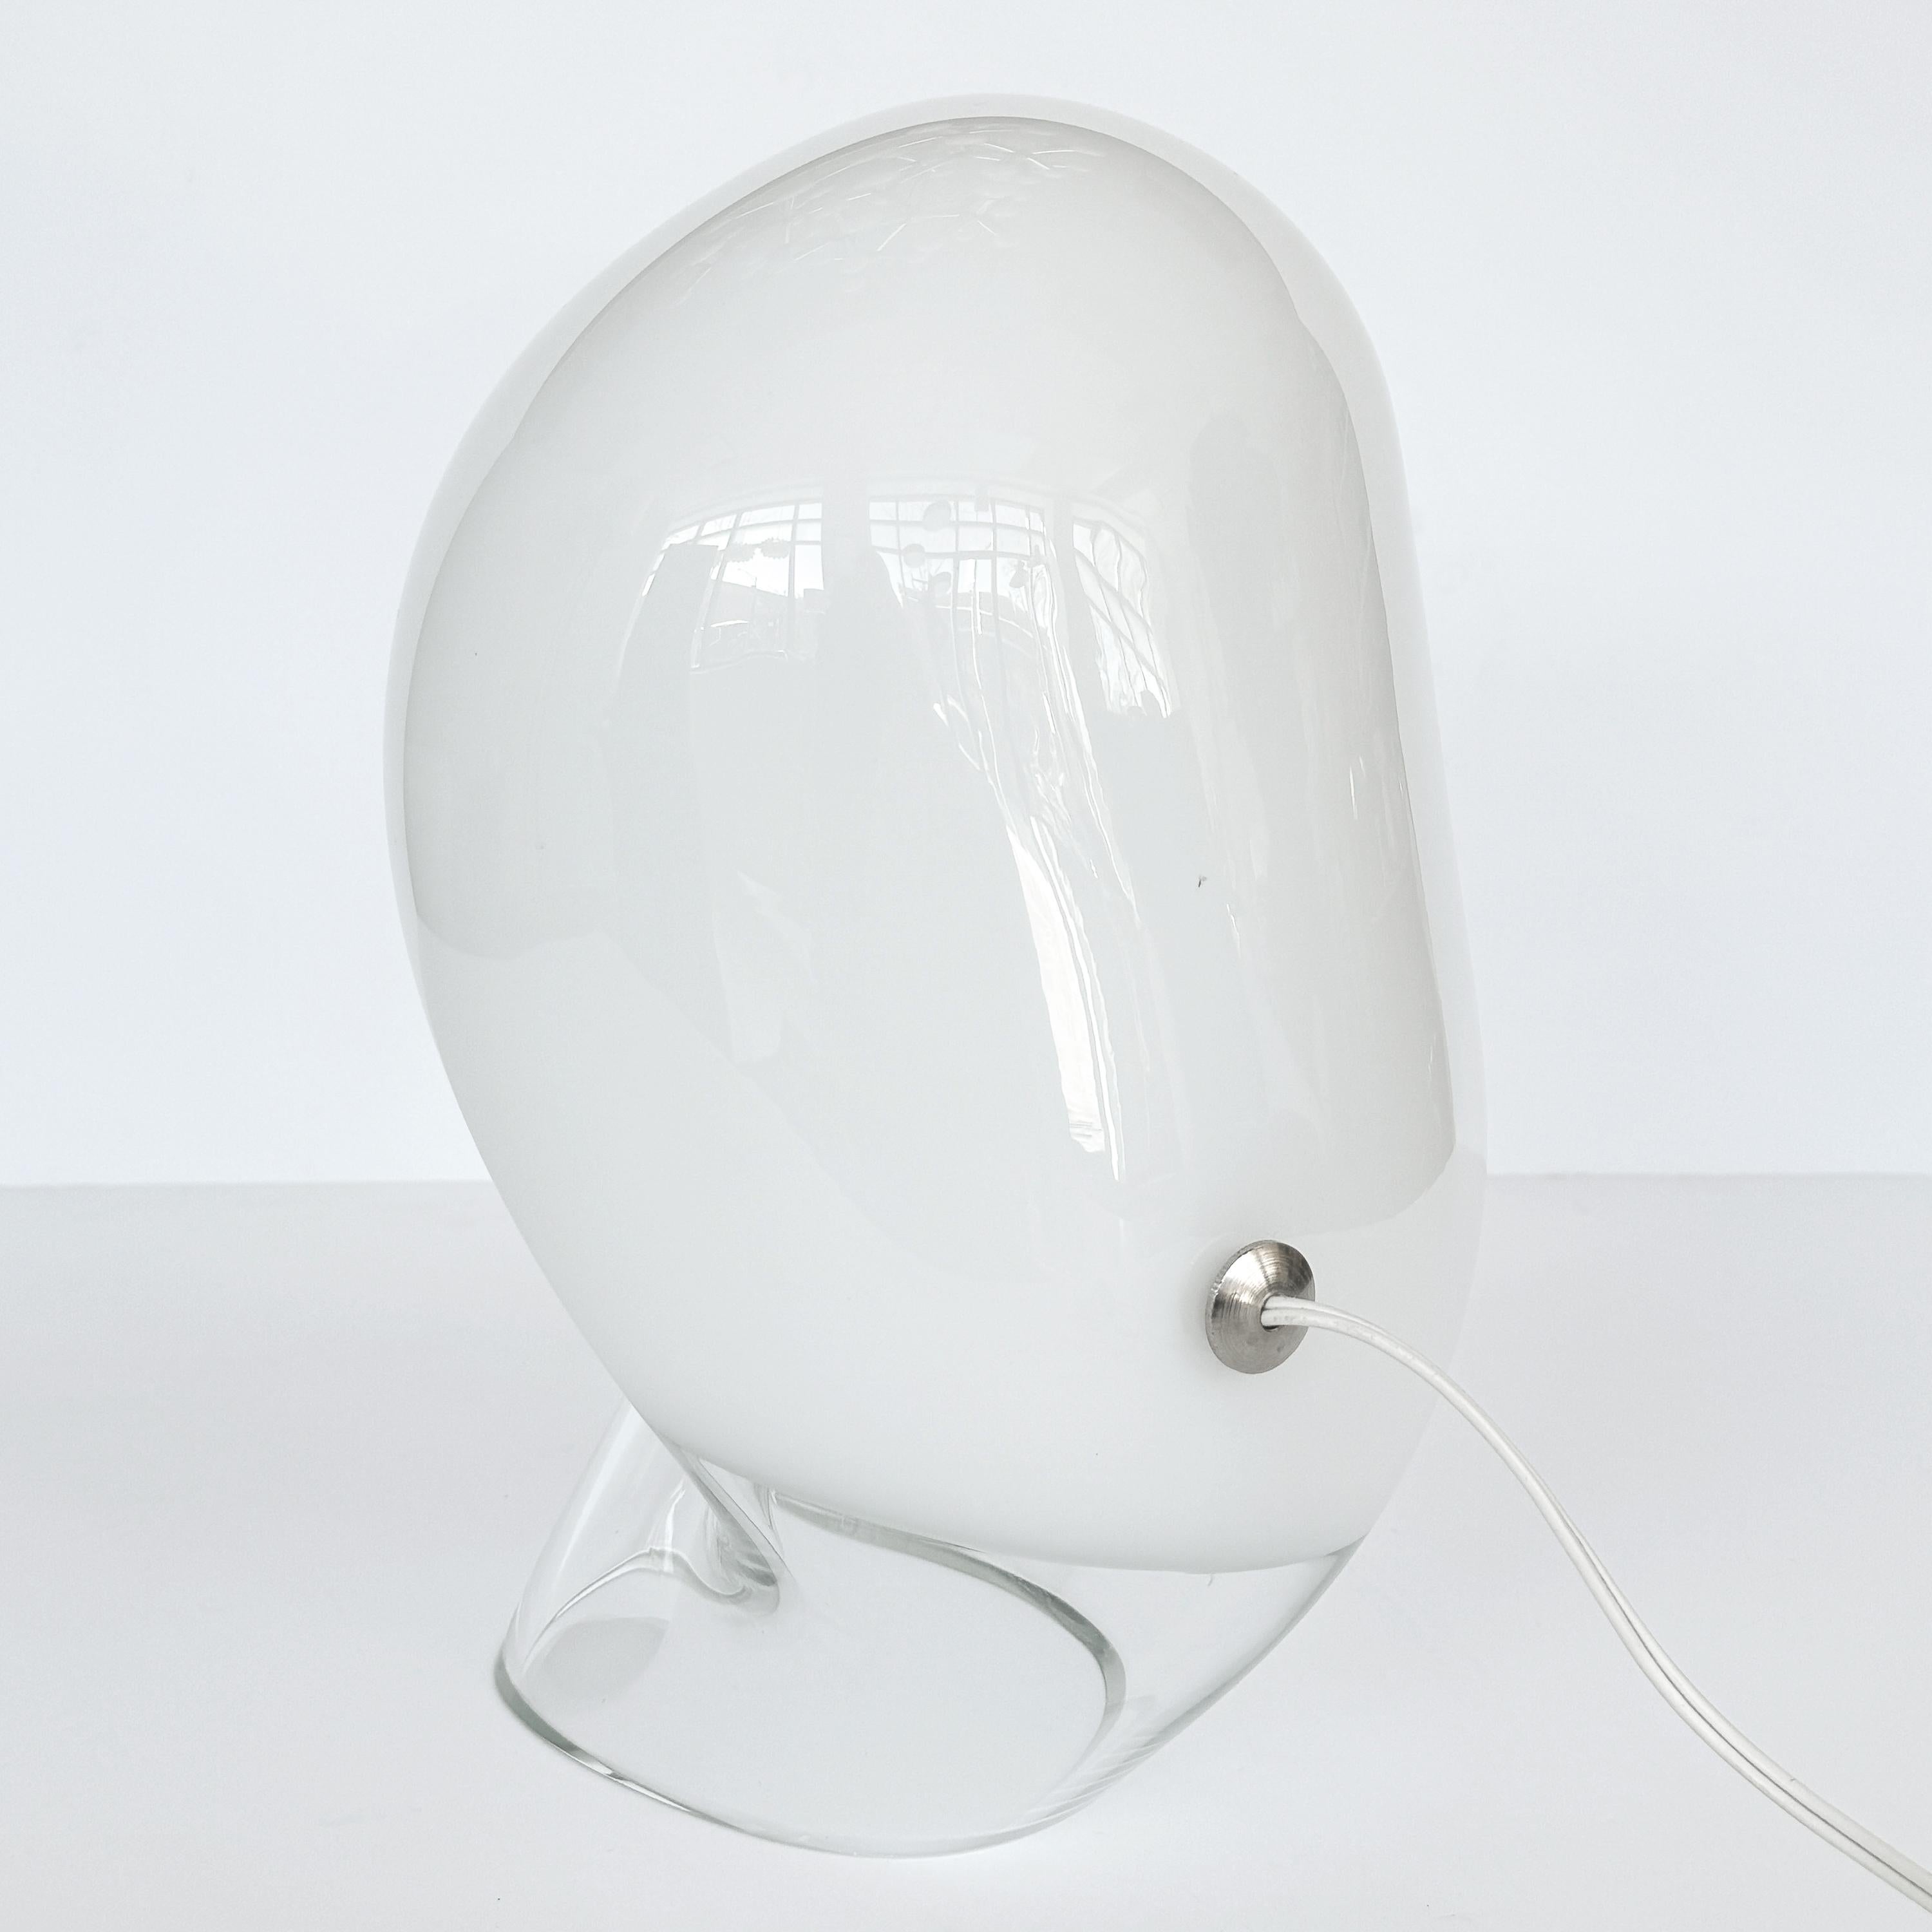 Vistosi Zaghetto Table Lamp Model L282 by Gino Vistosi For Sale 2